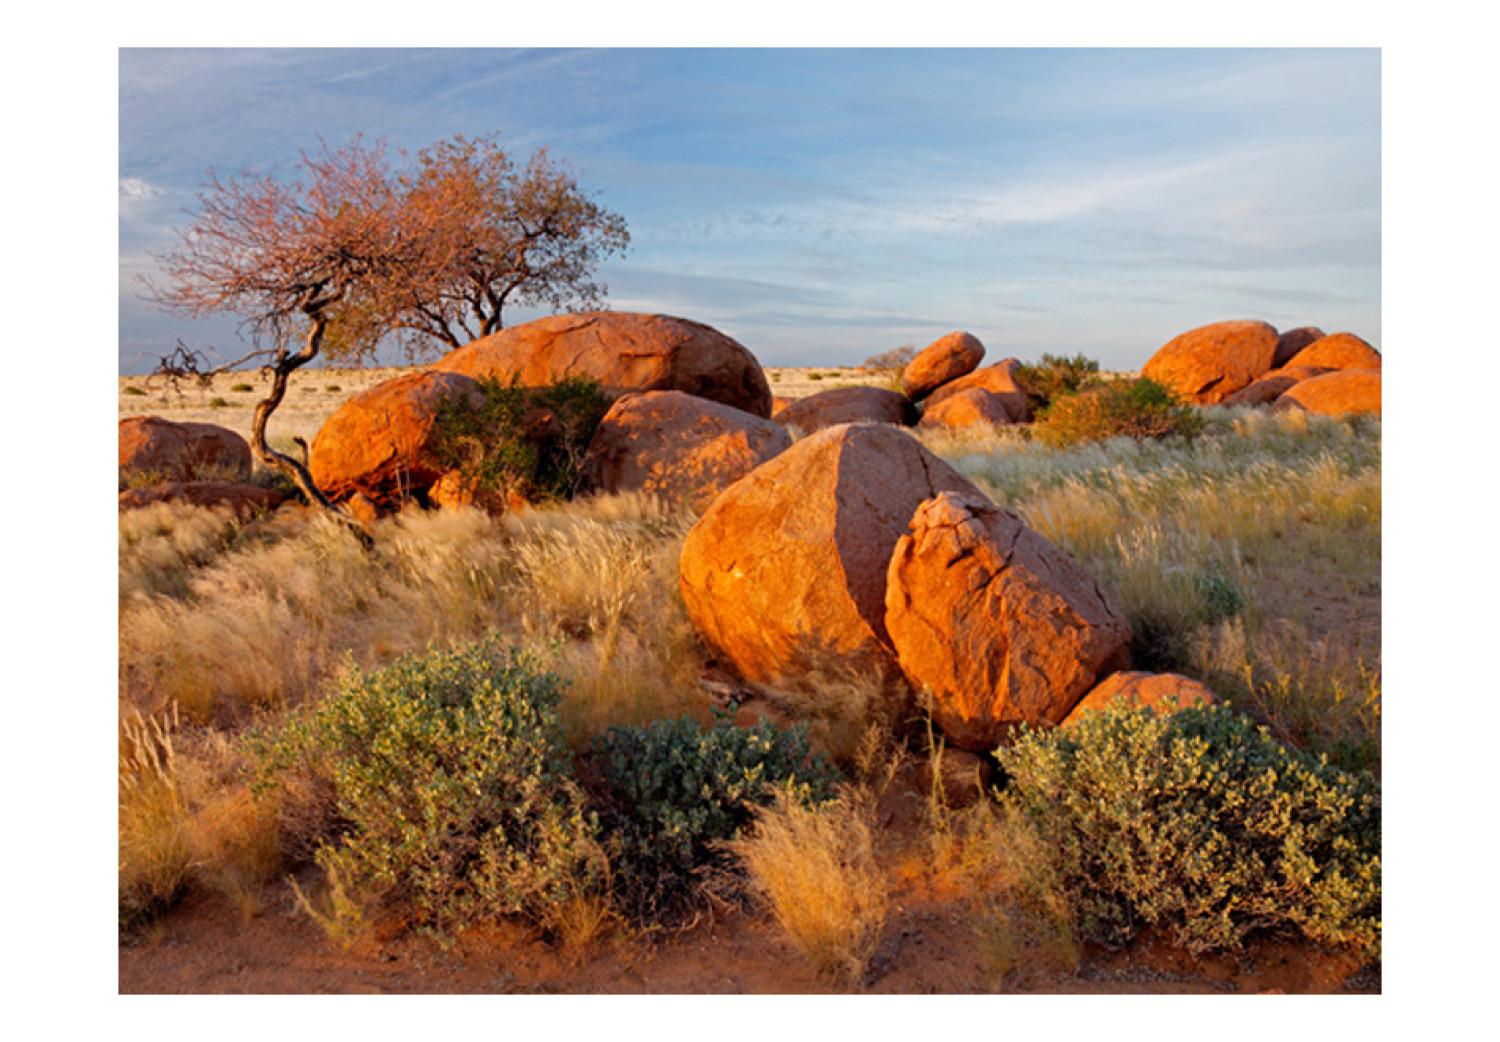 Fotomural a medida Paisaje africano en Namibia - naturaleza de la sabana con piedras